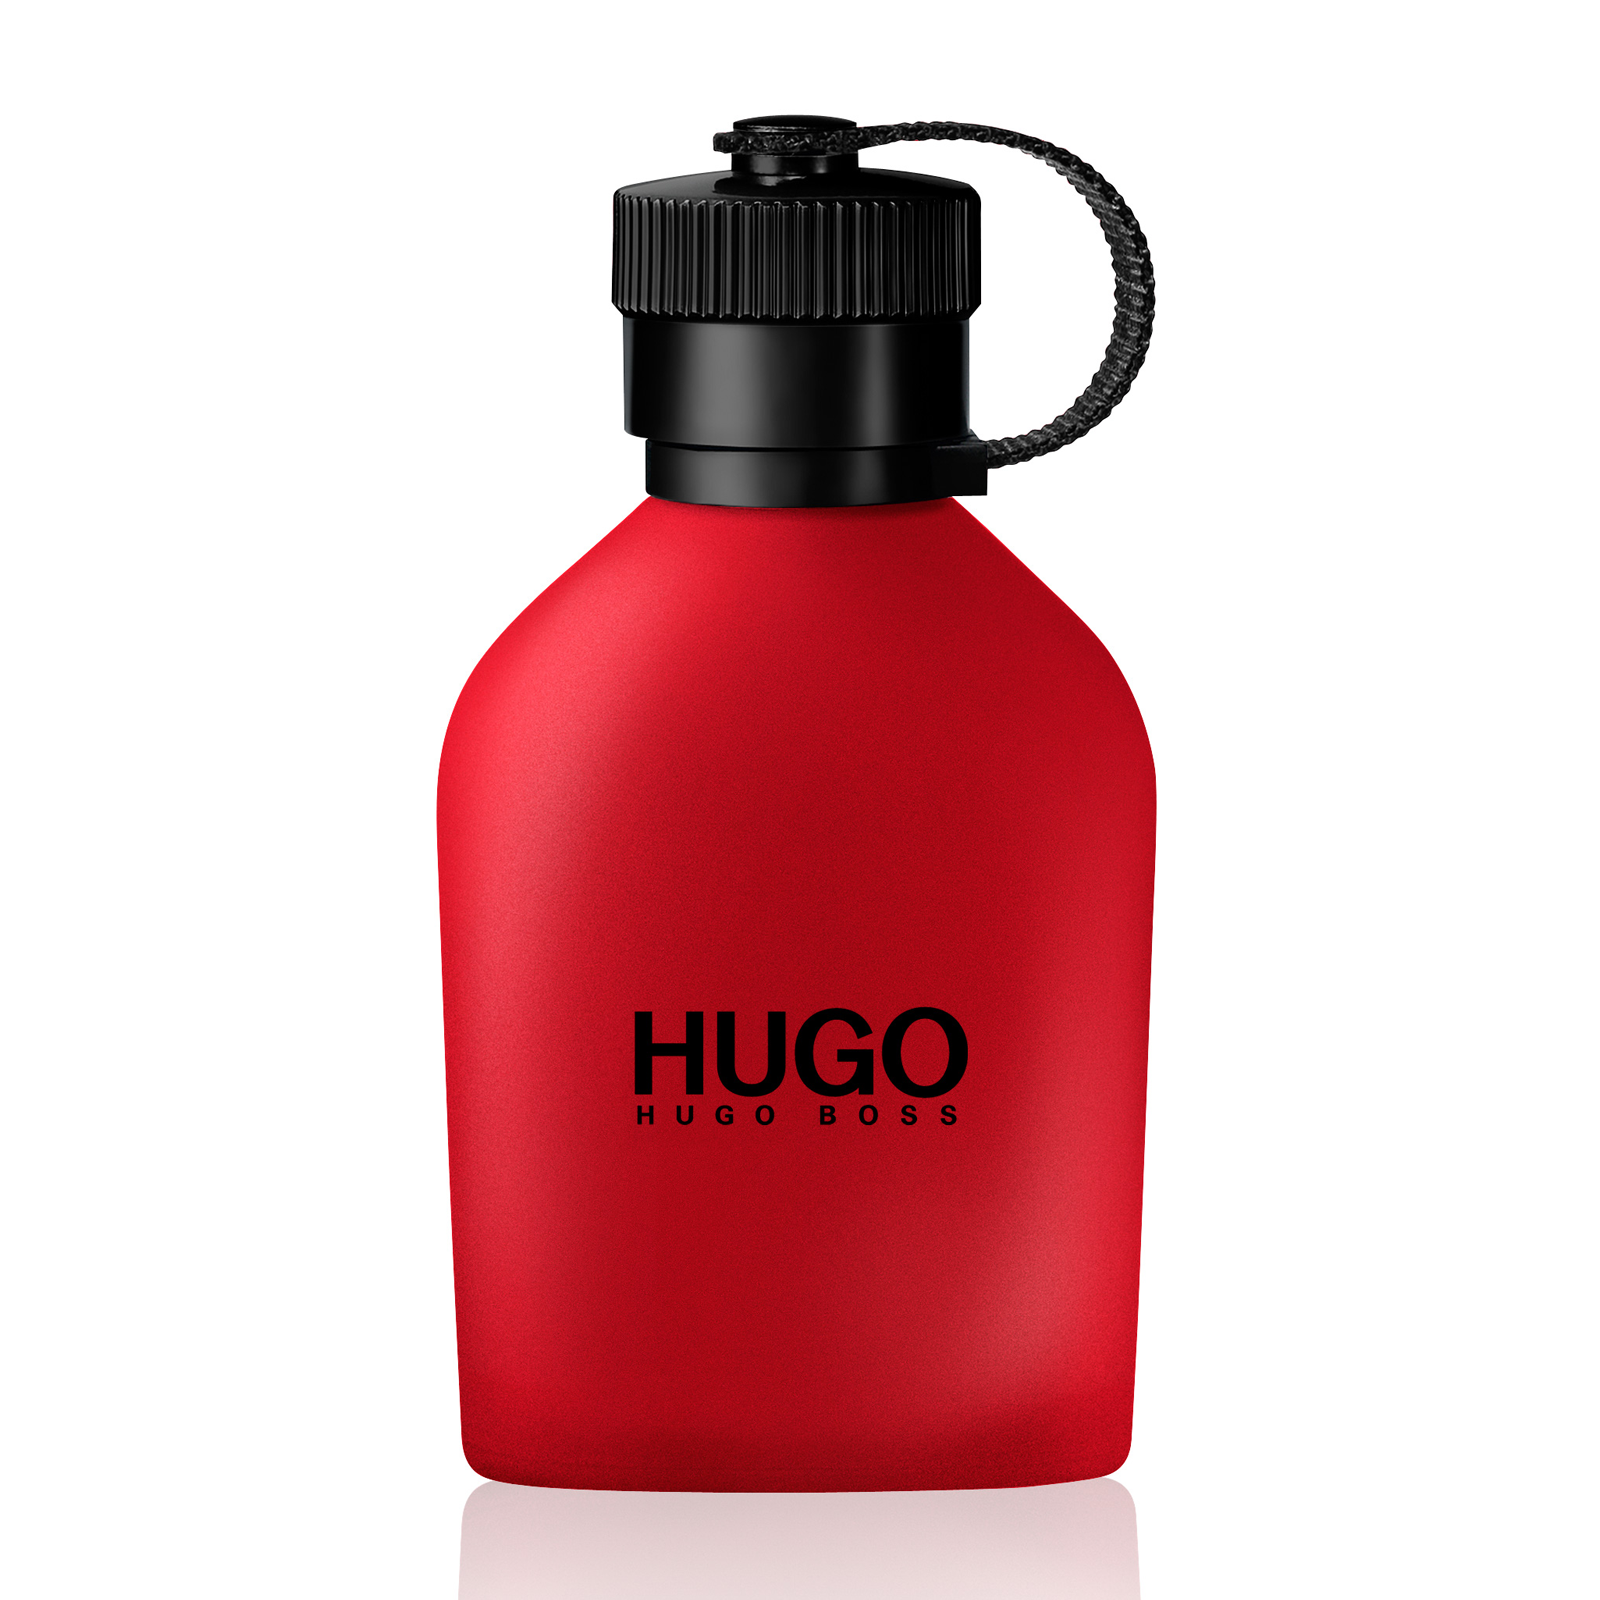 hugo boss 250 ml